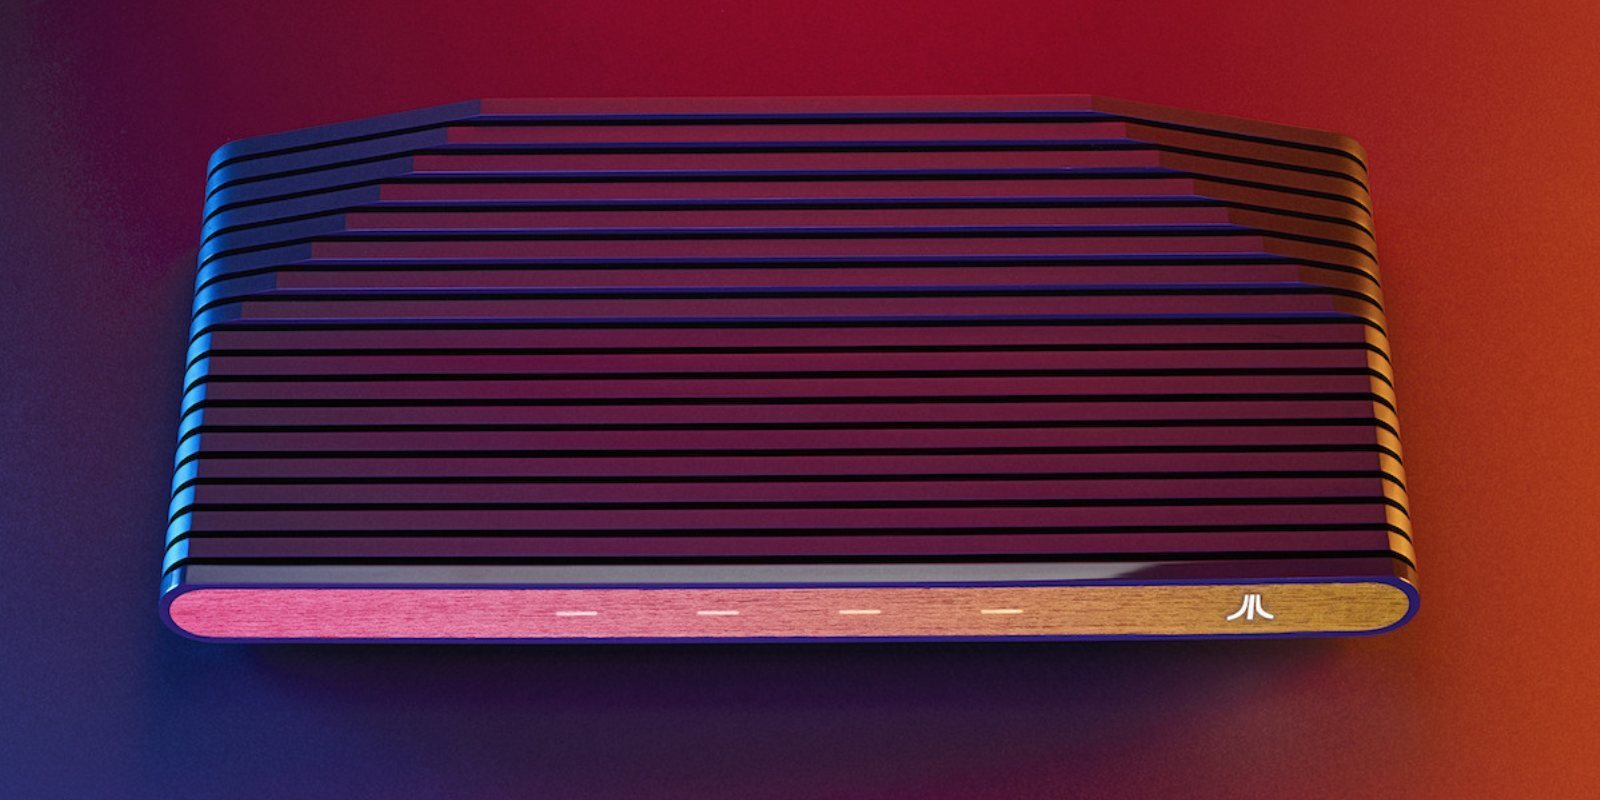 Atari VCS desvela sus características técnicas y abre sus reservas